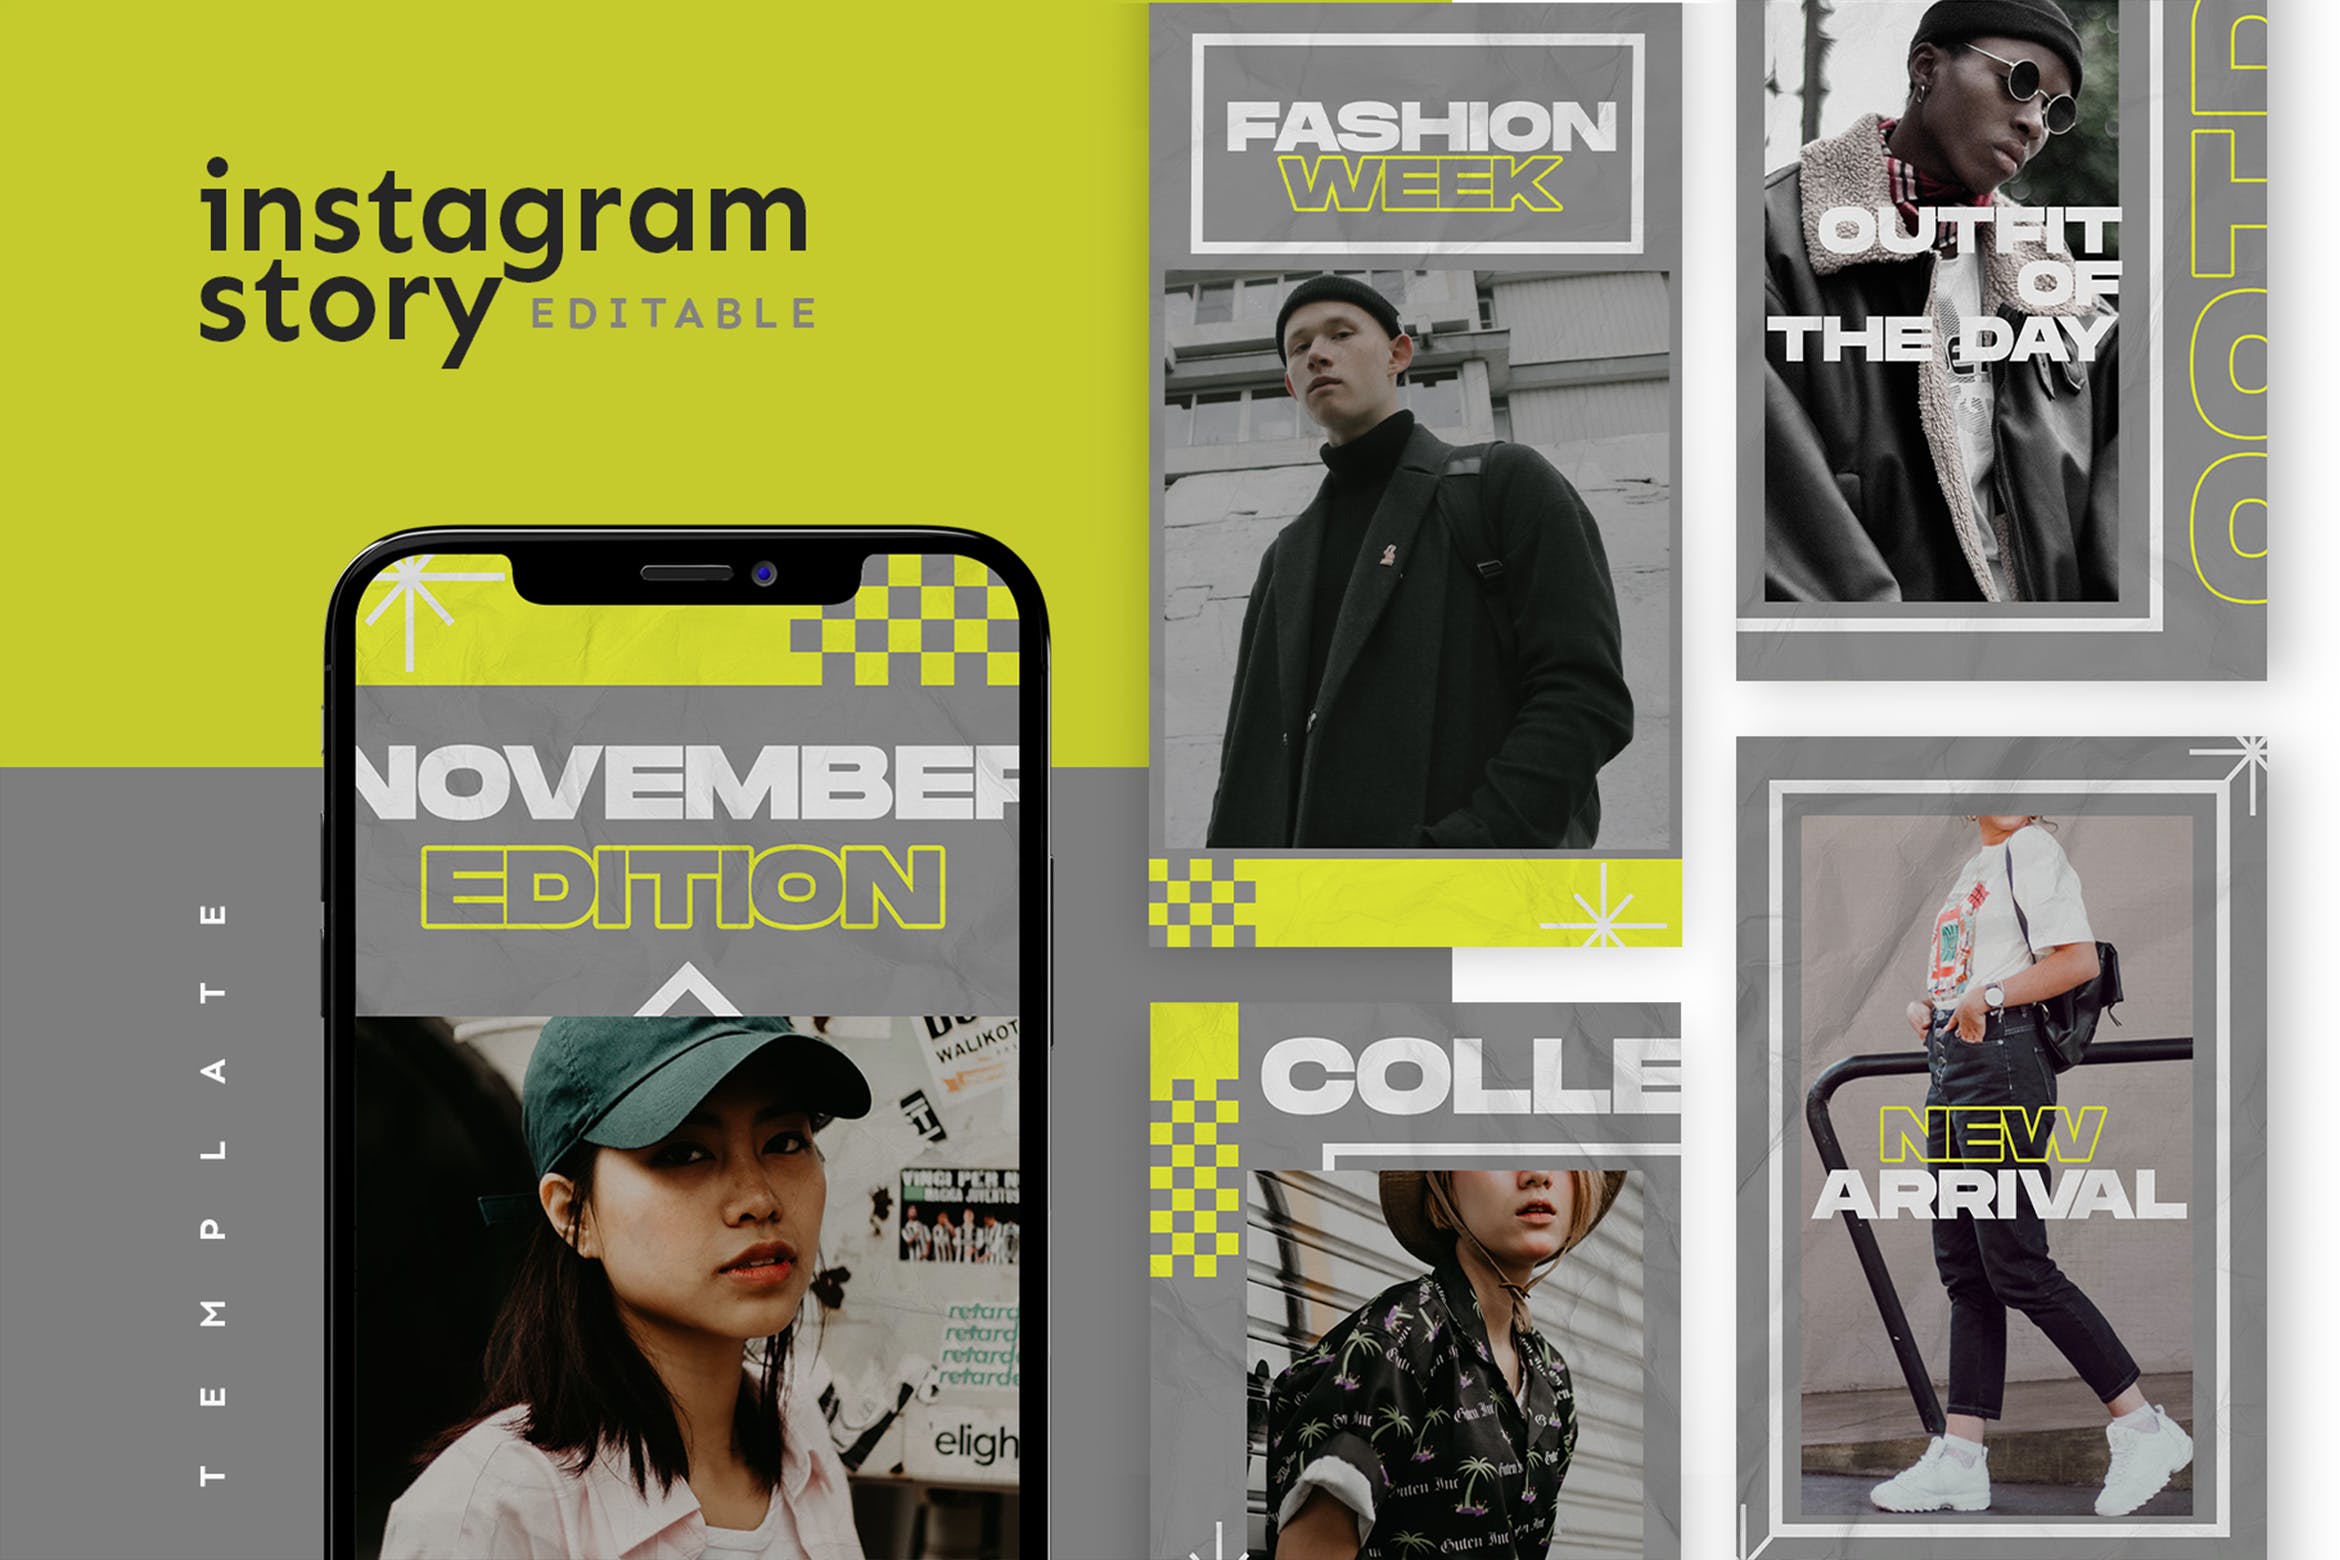 品牌时尚服装推广Instagram故事设计模板 Instagram Story Template设计素材模板